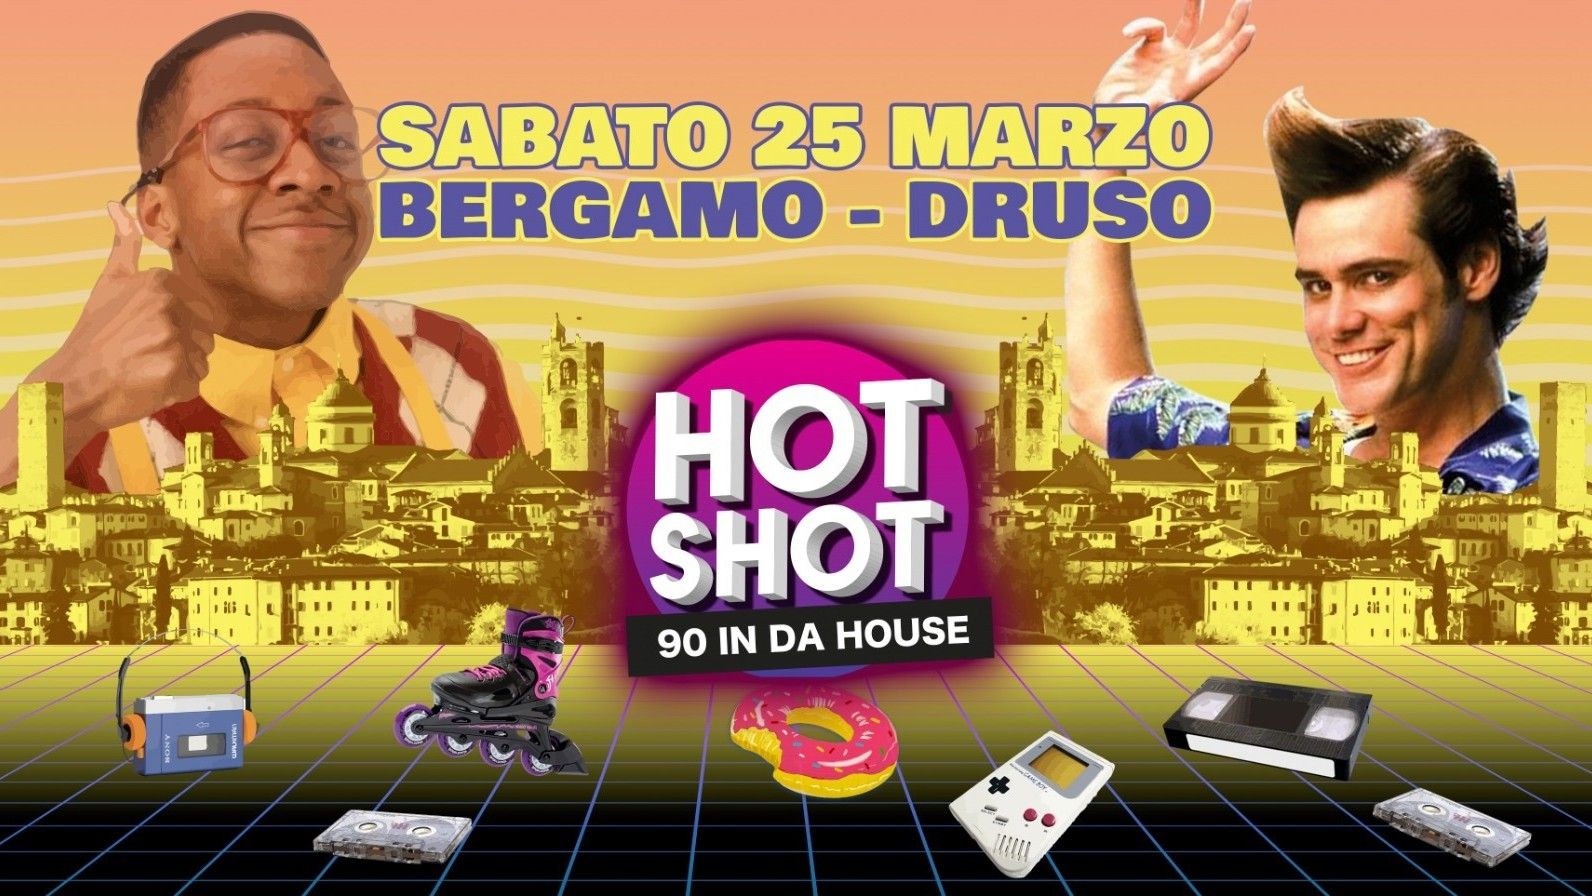 Hot Shot - 90 in da house